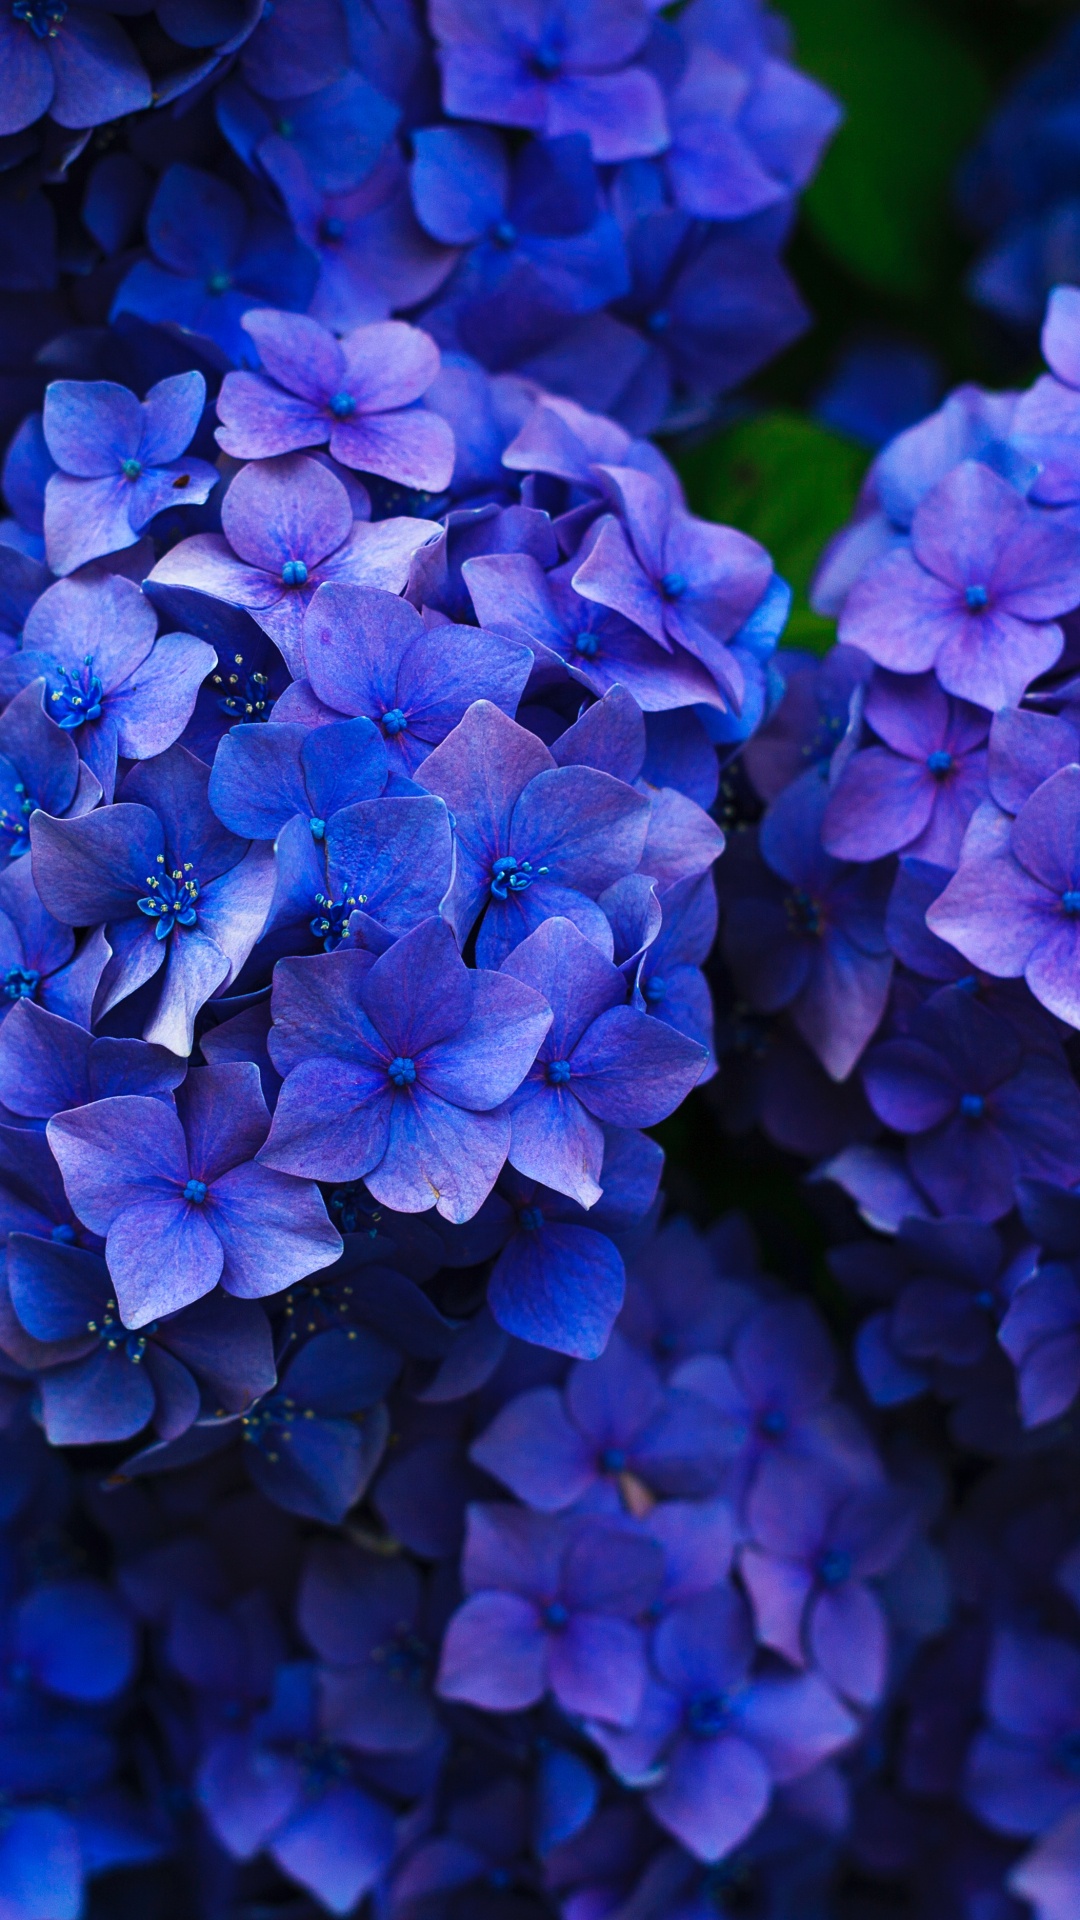 法国的绣球花, 灌木, 钴蓝色的, 紫色的, 紫罗兰色 壁纸 1080x1920 允许